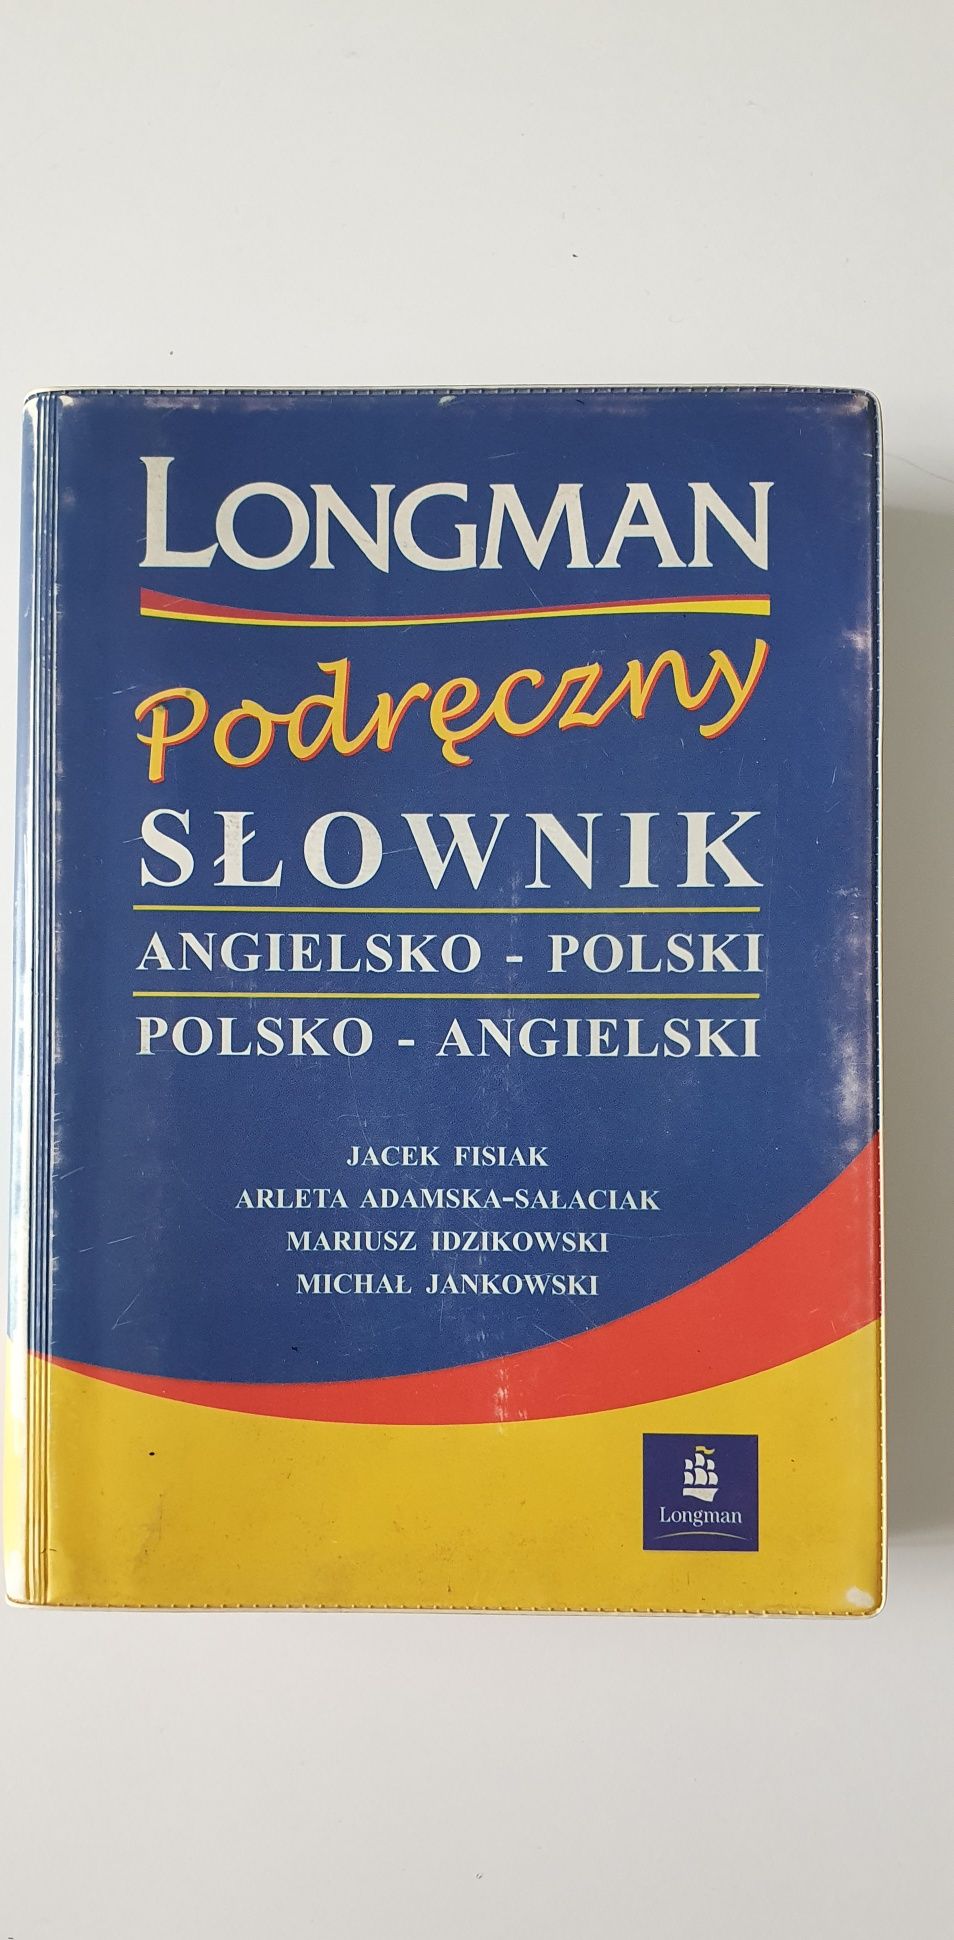 Longman Podręczny słownik angielsko - polski / polsko - angielski